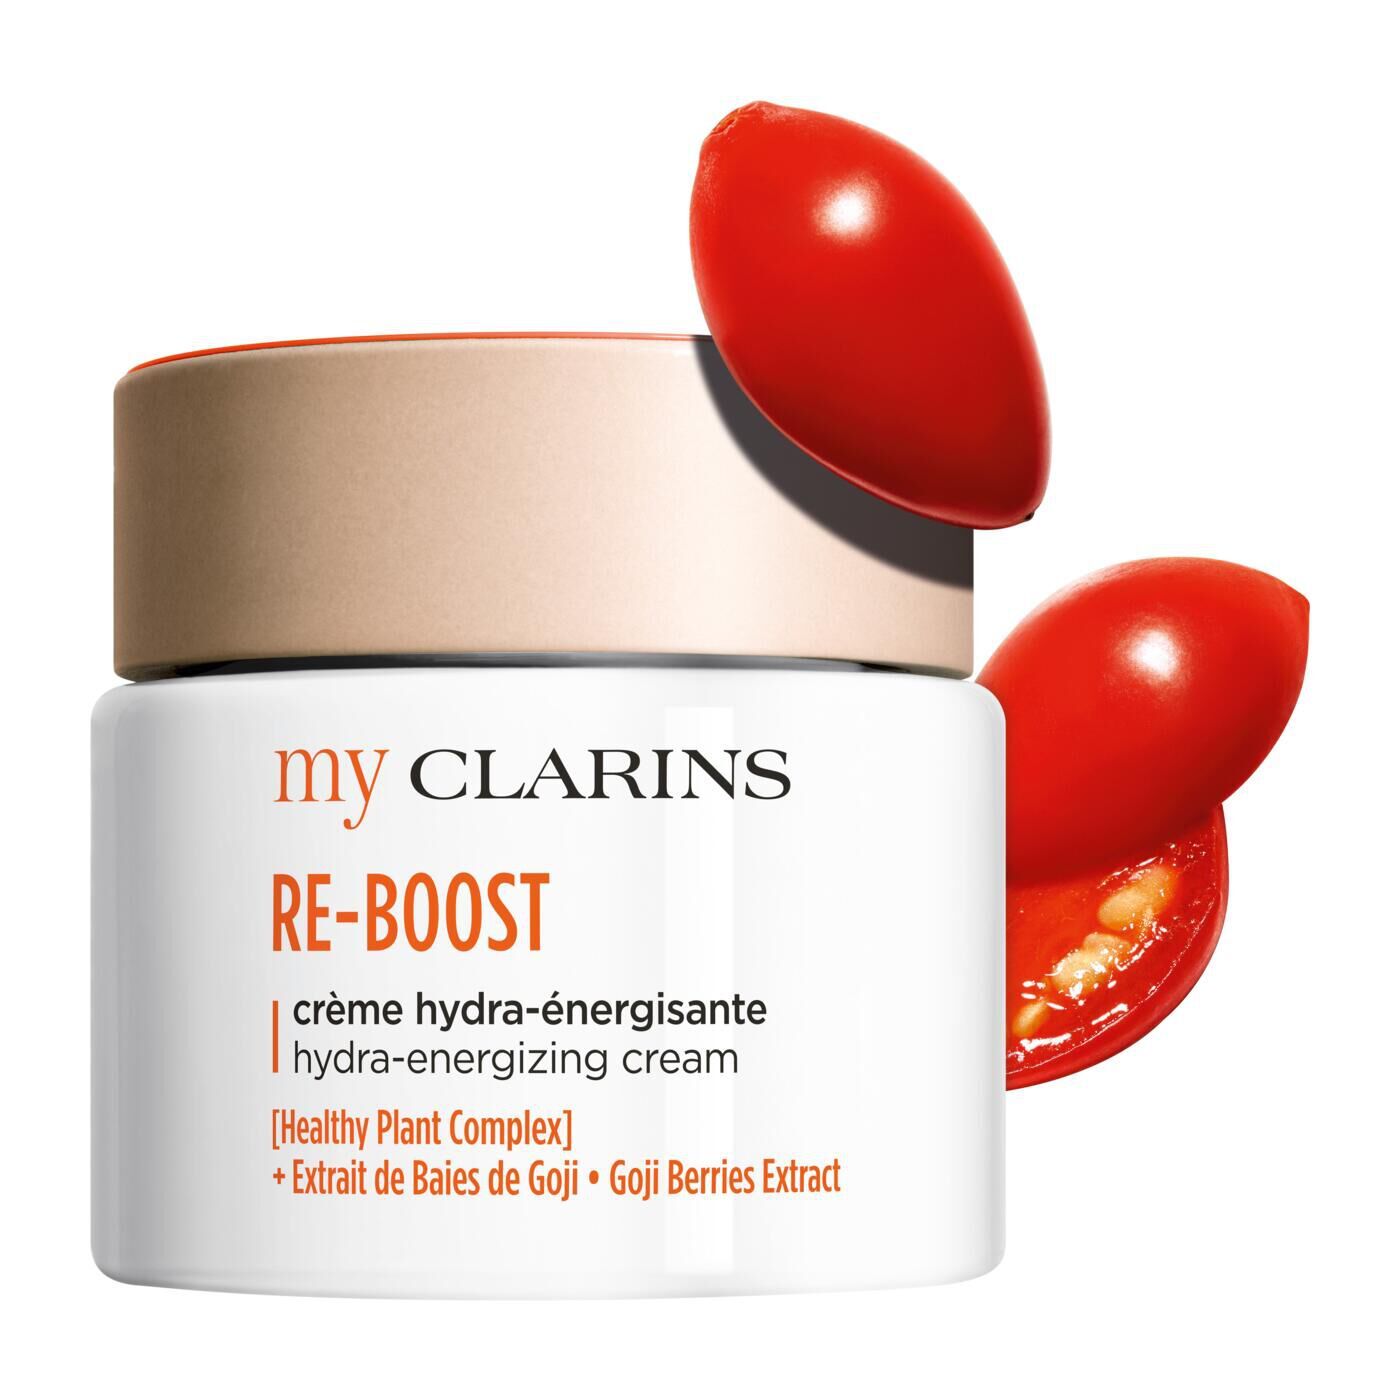 Clarins RE-BOOST crema idratante energizzante - Pelle giovane - Idratazione e luminosità